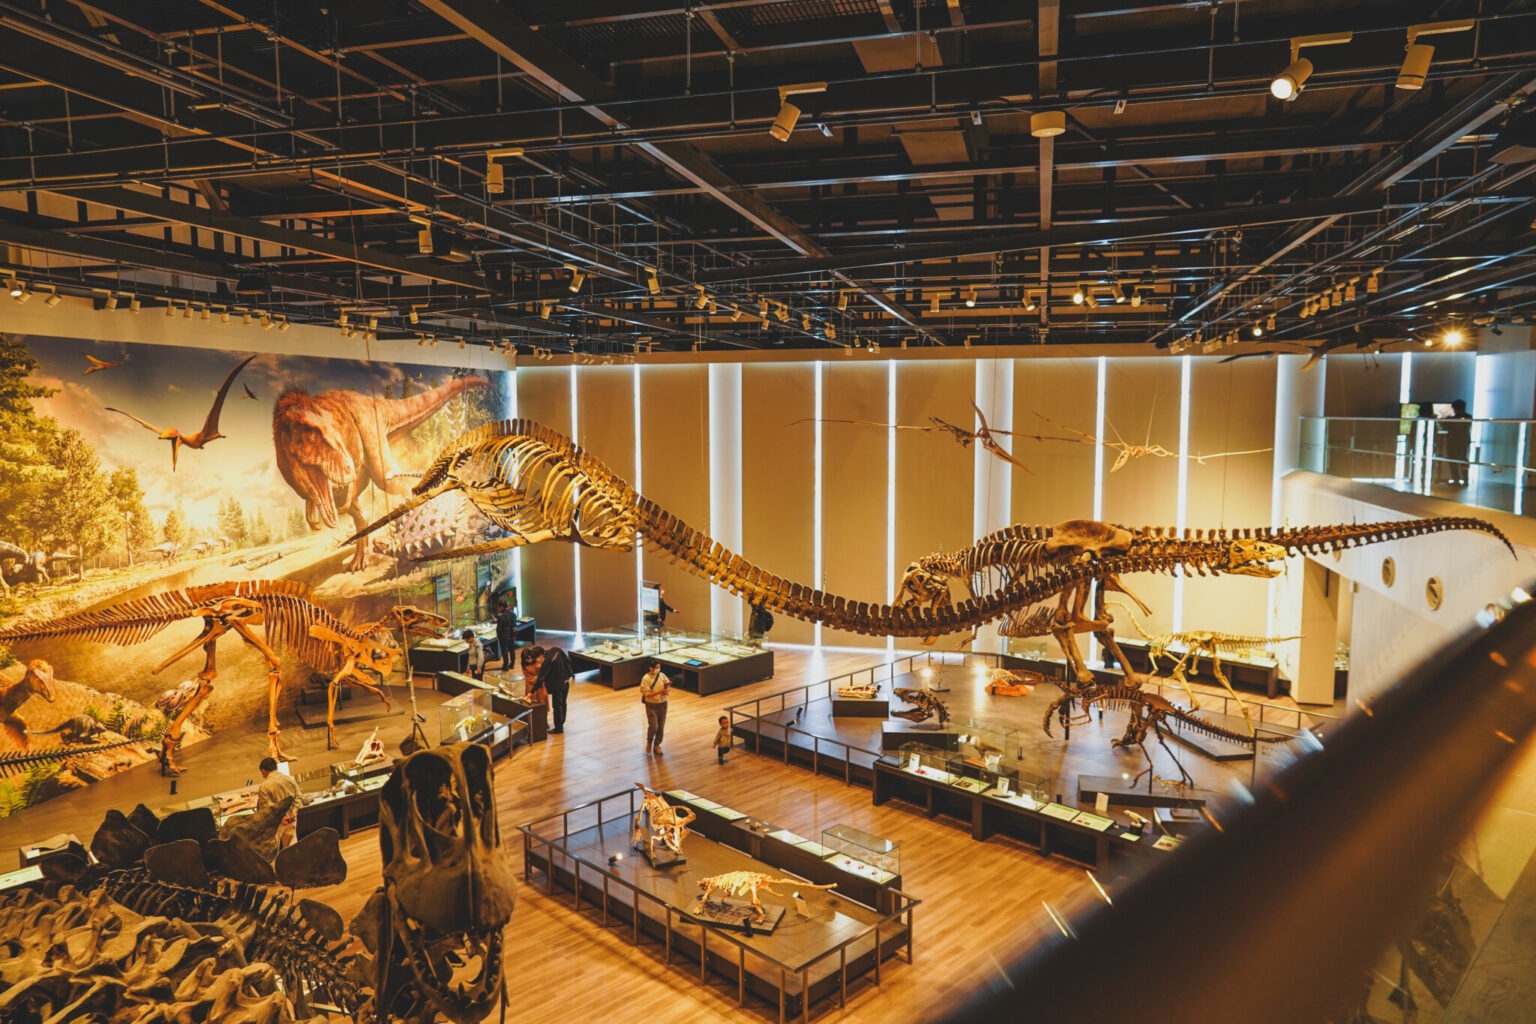 ティラノサウルス・レックスの骨格レプリカは約13mもあり、見ての通りの存在感！